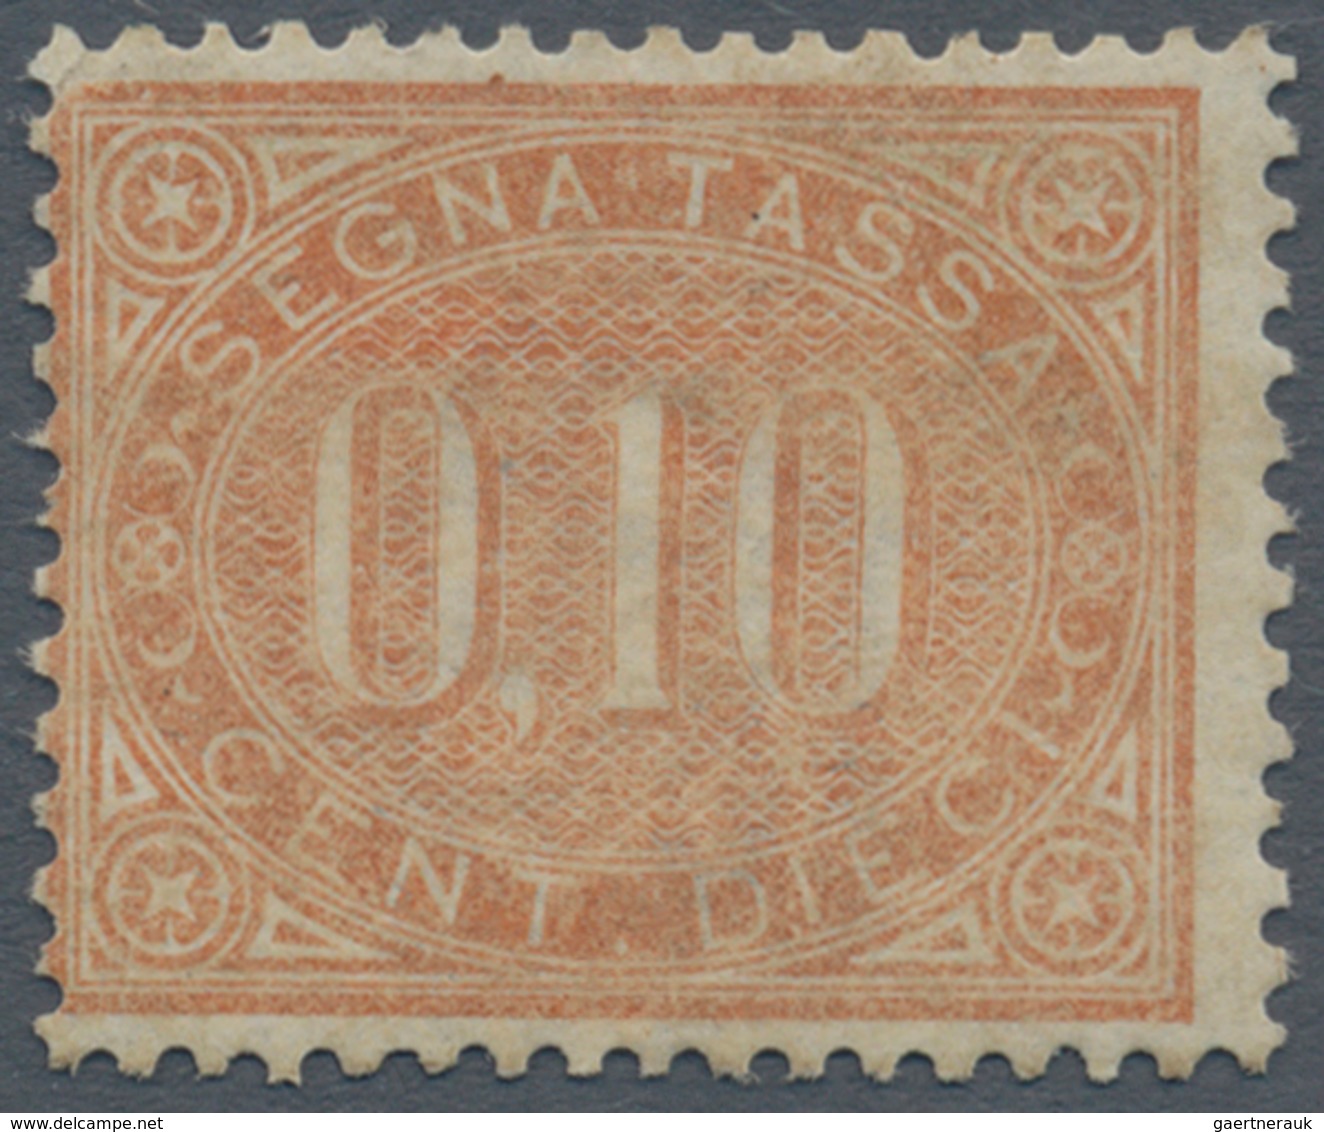 Italien - Portomarken: 1869, 10 Cents Brown Orange, Mint With Gum; Certified By Guglielmo Oliva (196 - Postage Due